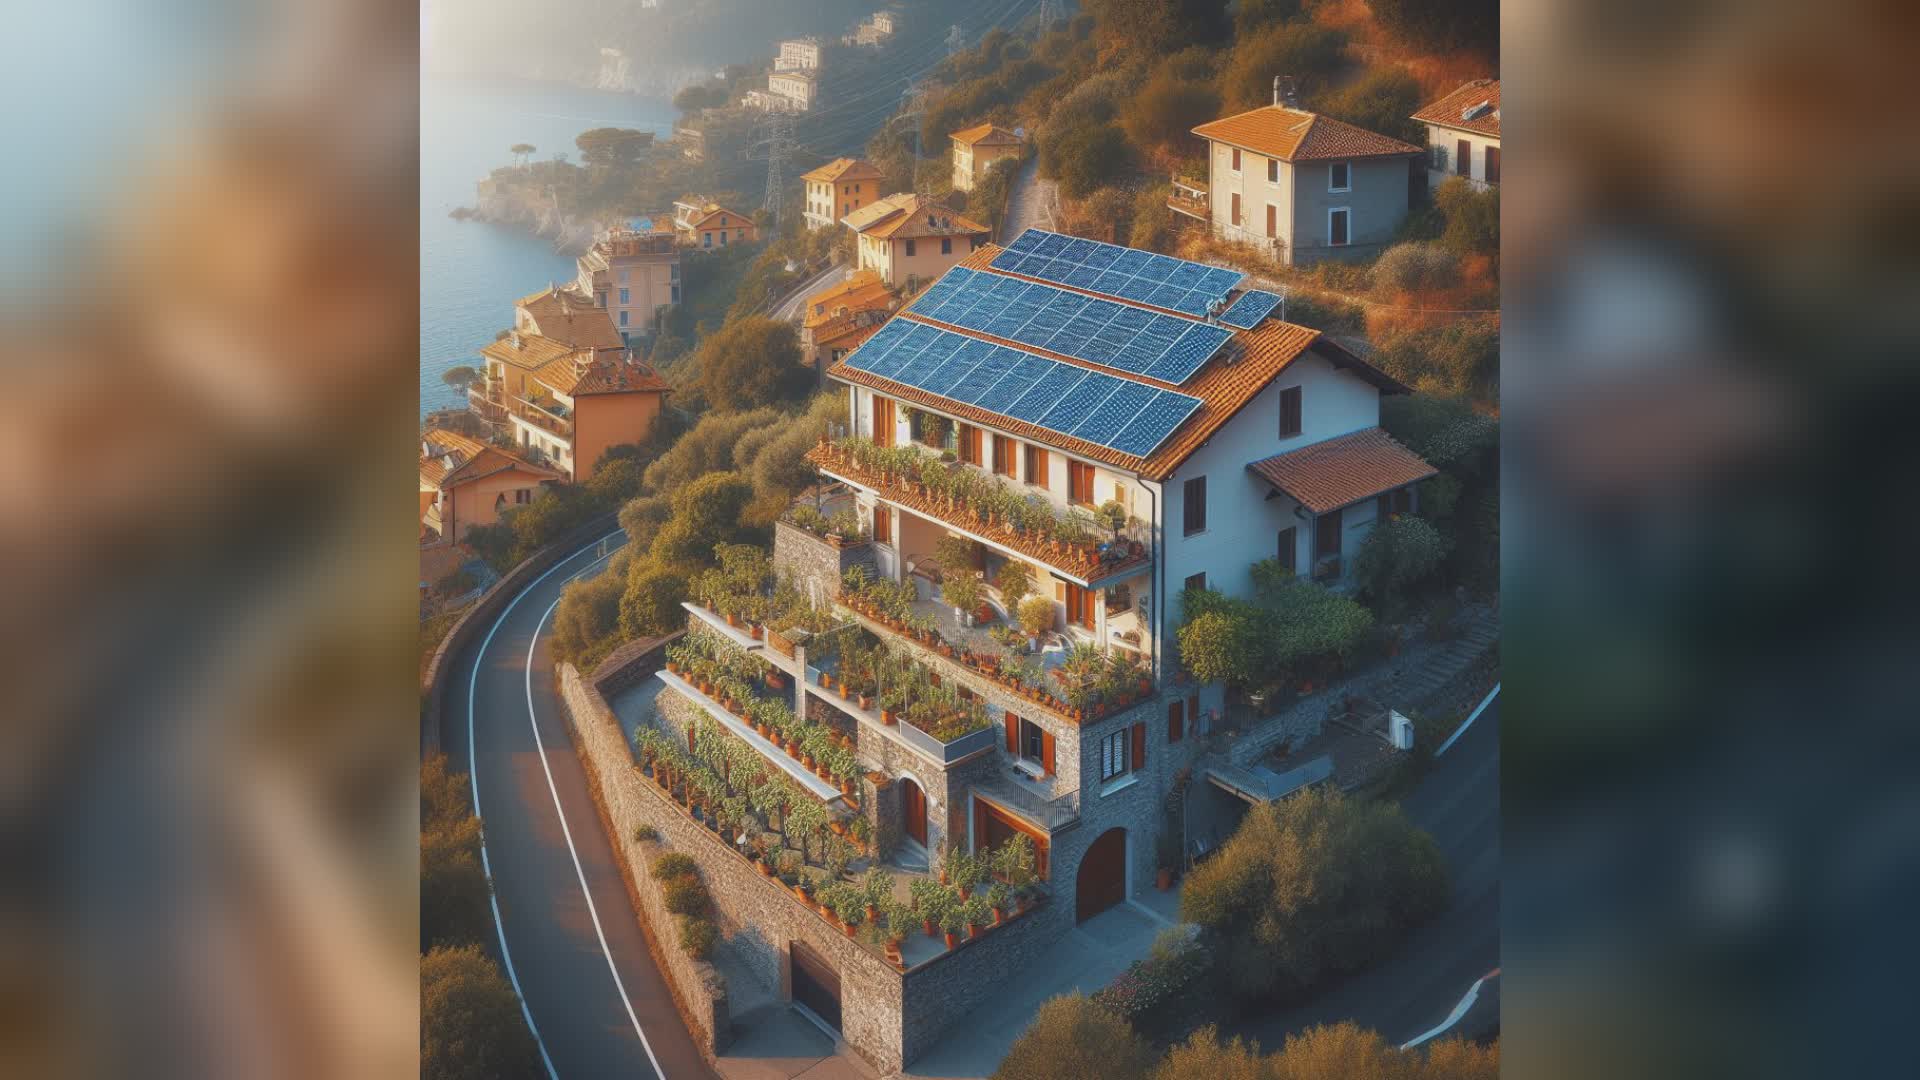 Liguria terza regione in Italia per produttività impianti fotovoltaici